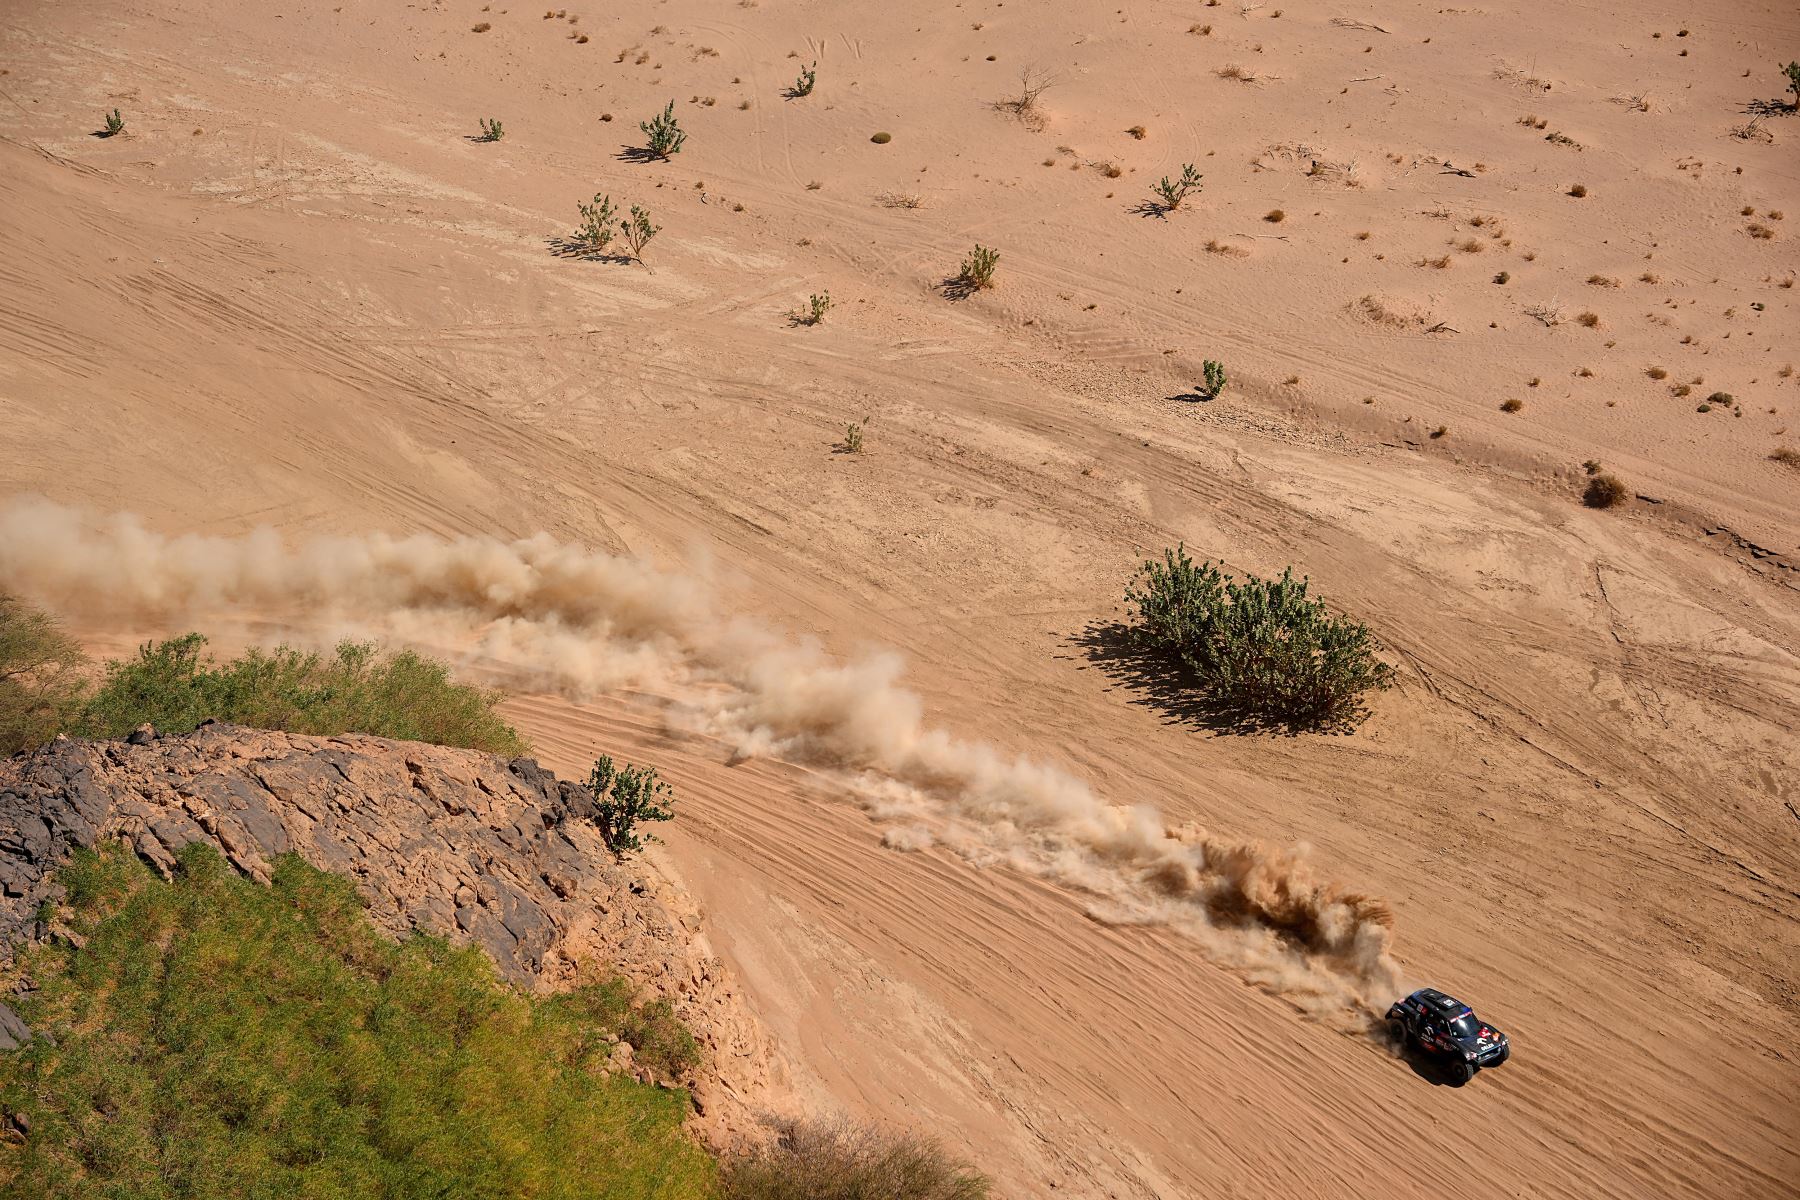 El piloto de Mini, Jakub Przygonski, de Polonia, y su copiloto, Timo Gottschalk, de Alemania, compiten durante la Etapa 10 del Rally Dakar 2022 entre Wadi Ad Dawasir y Bisha en Arabia Saudita.
Foto: AFP